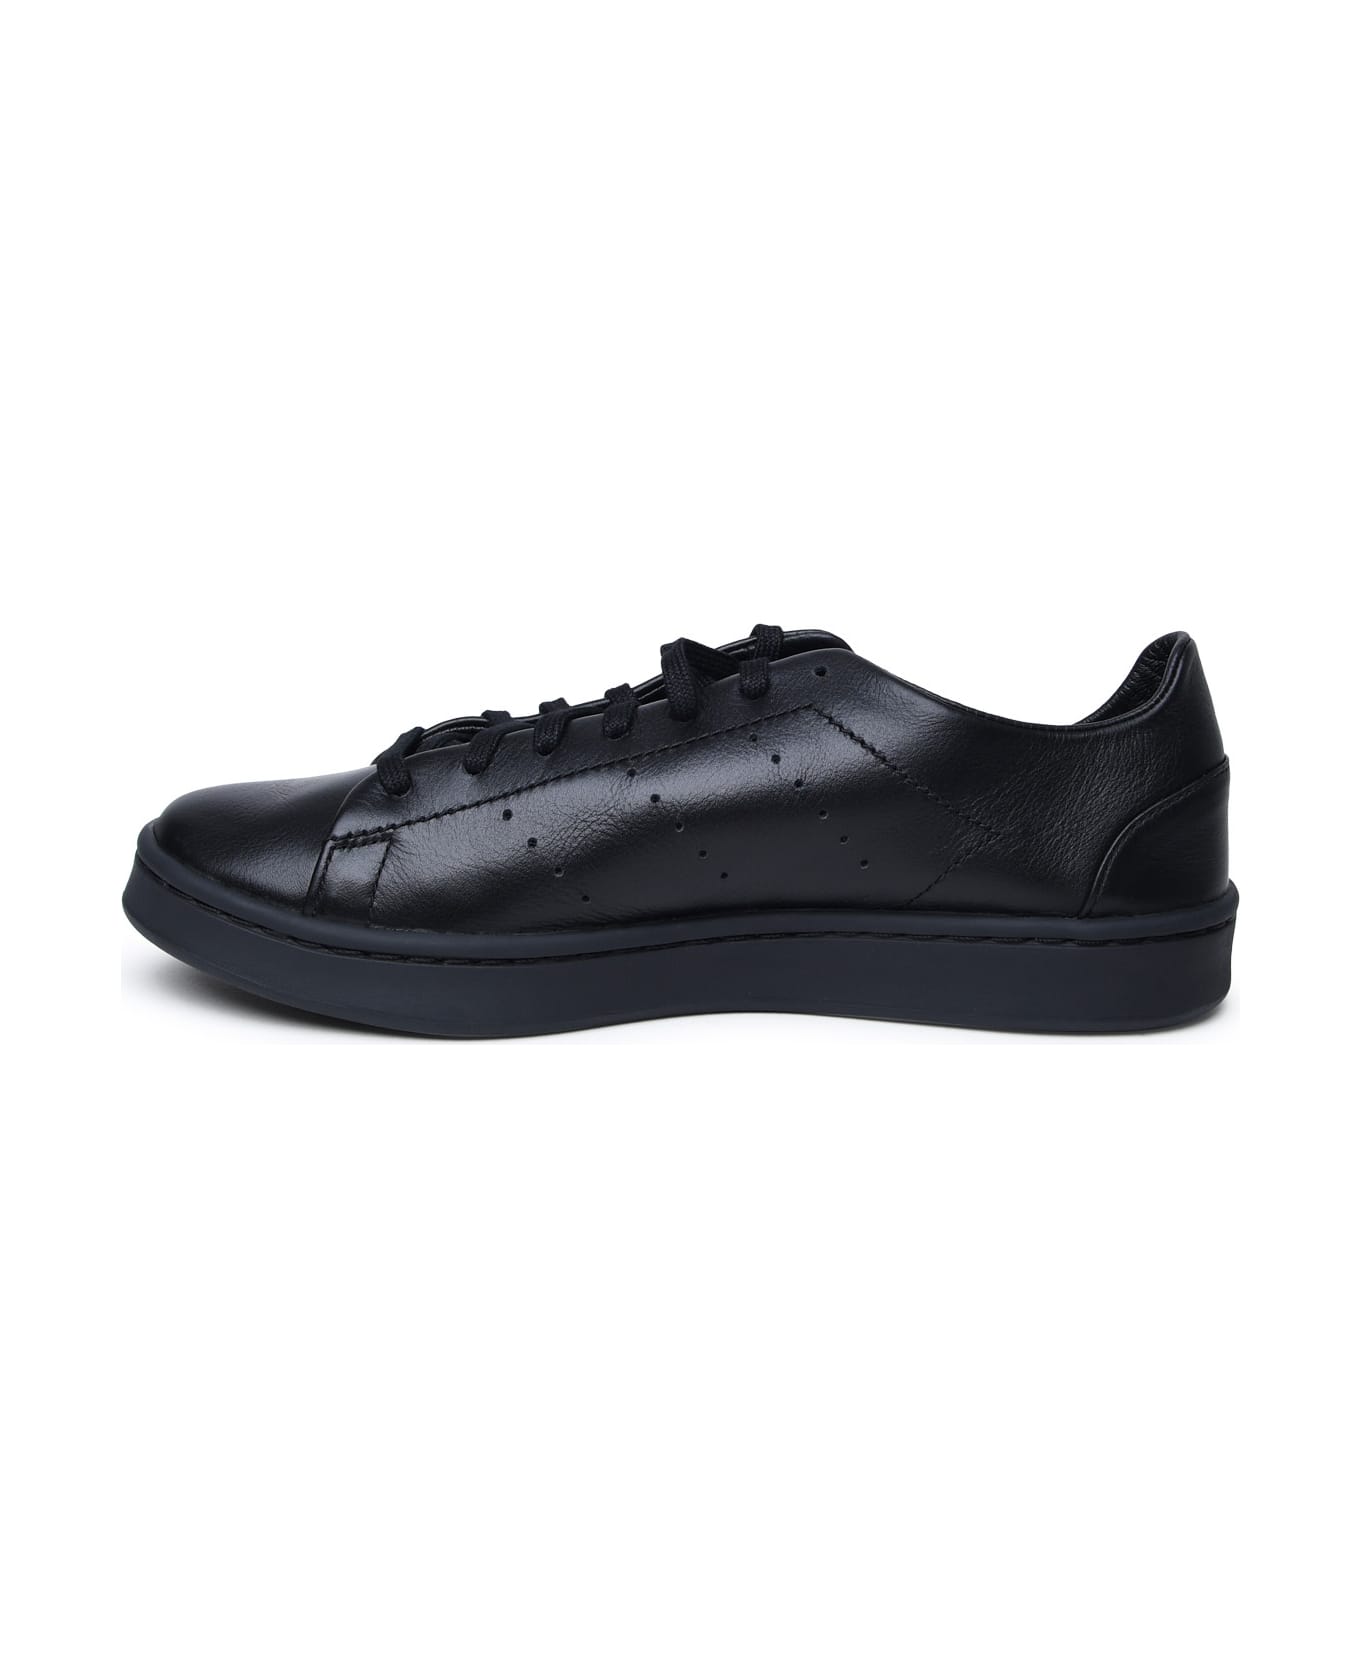 Y-3 Black Leather Sneakers - BLACKBLACKBLACK